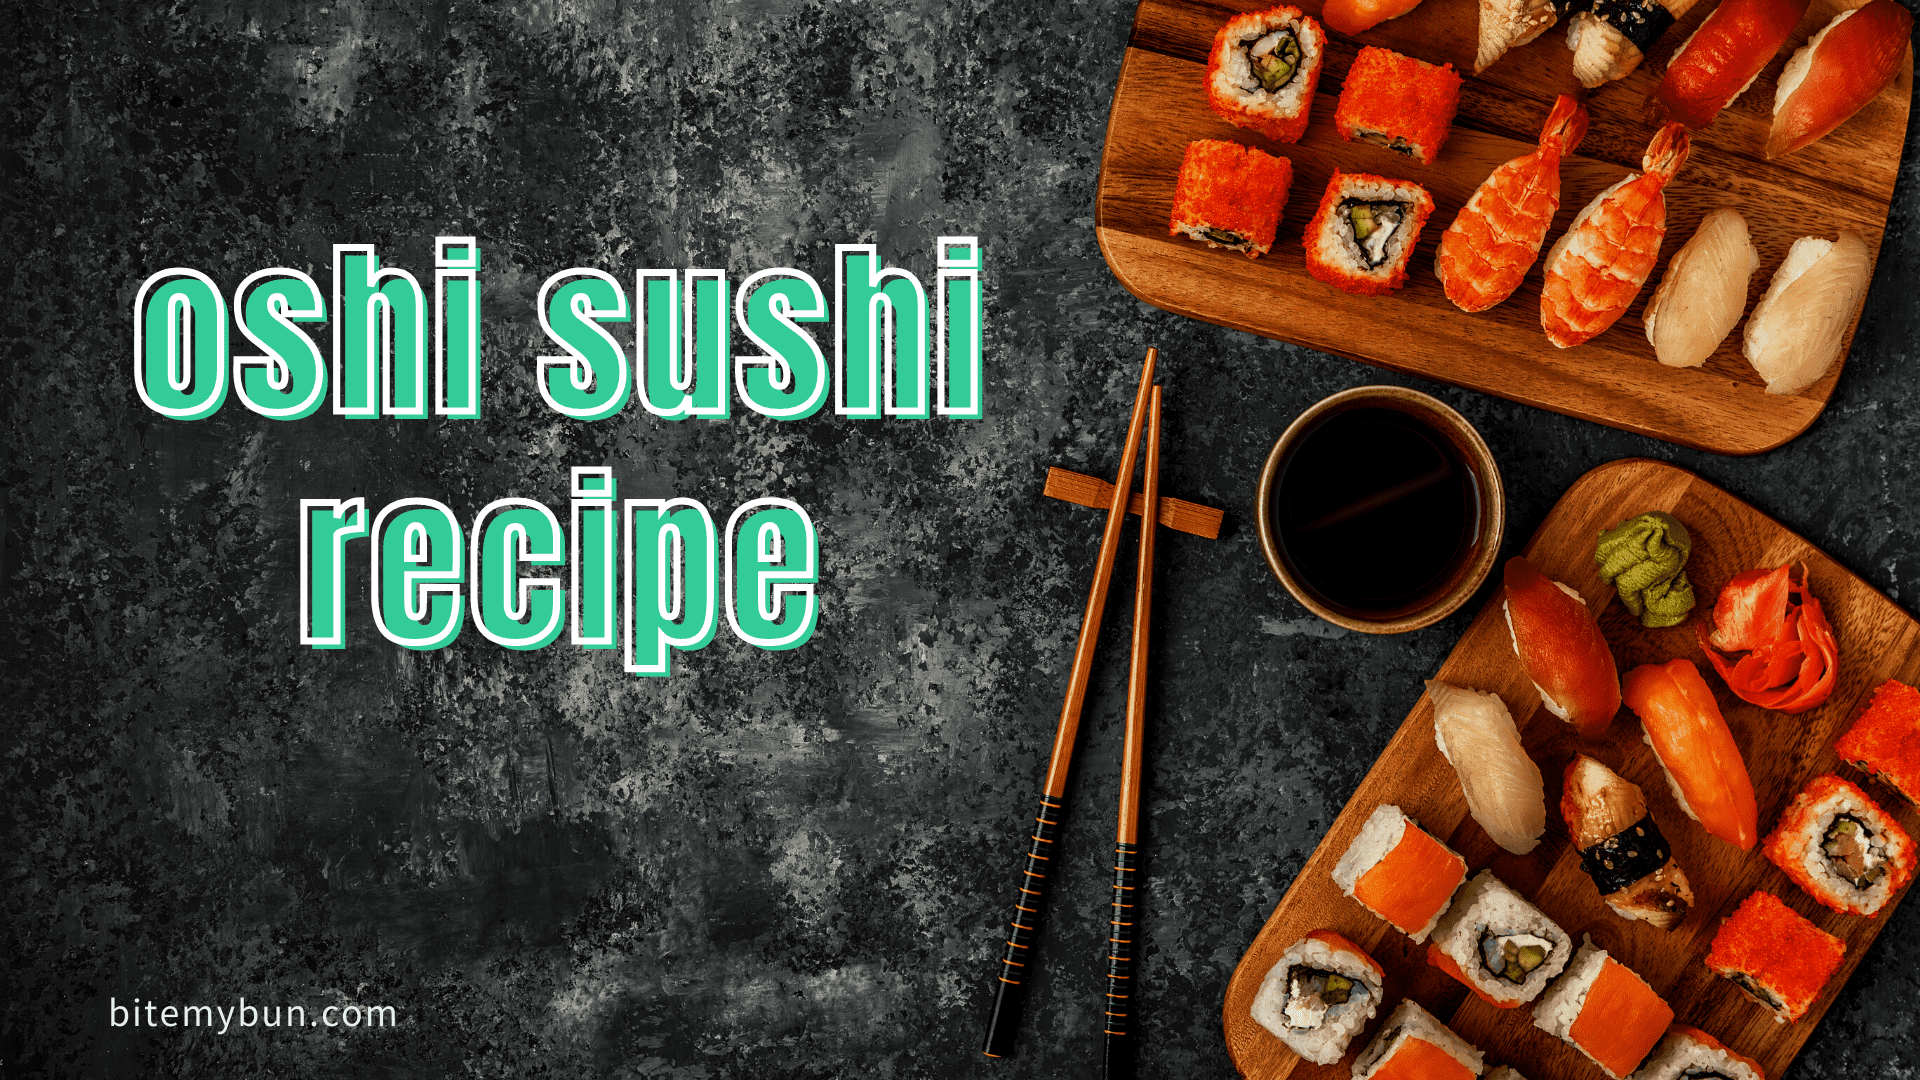 Receta de sushi Oshi | El famoso box sushi explicado + cómo hacerlo tú mismo